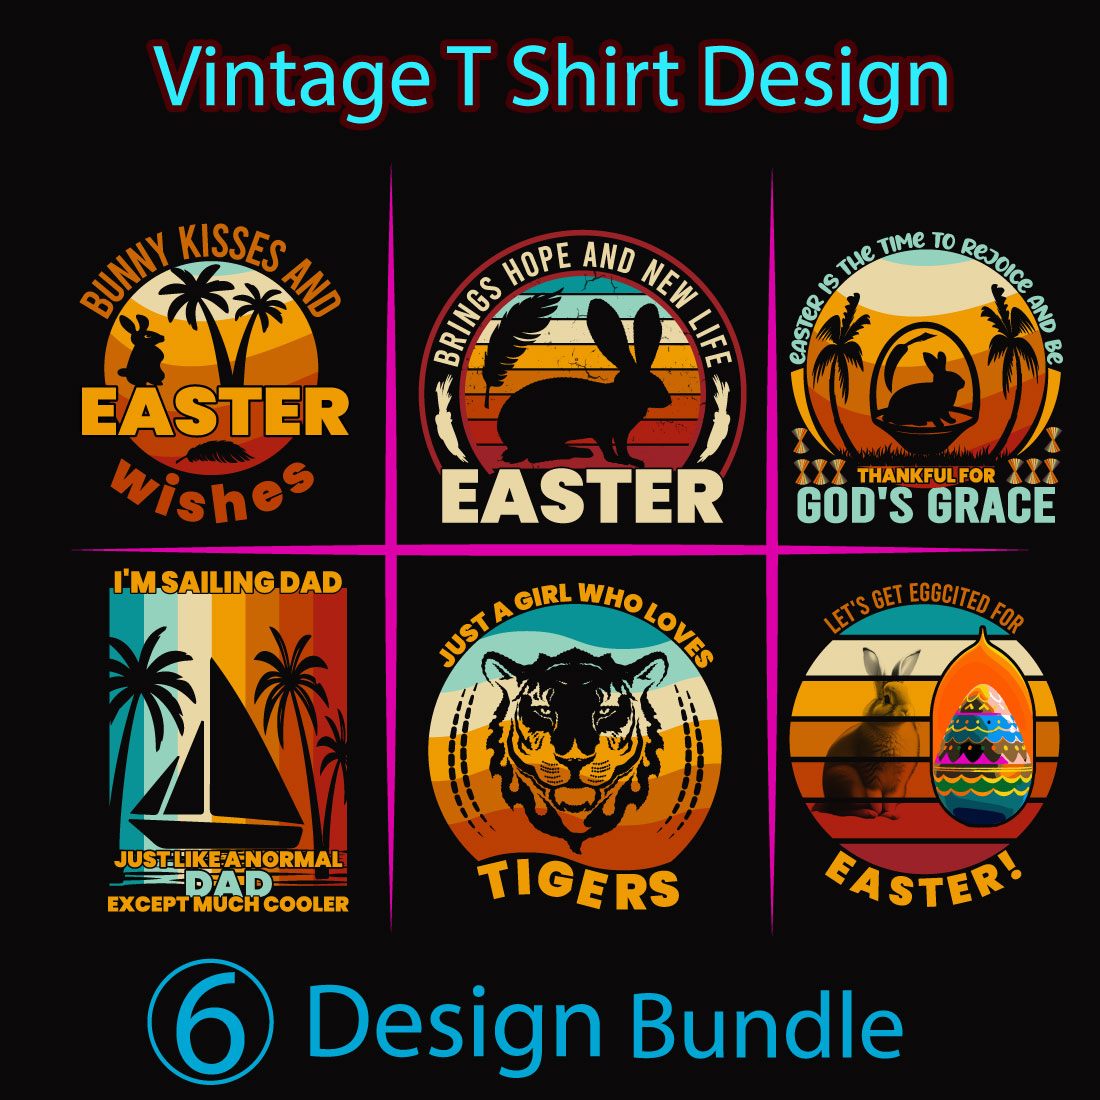 Easter Vintage T-Shirt Design Bundle cover image.